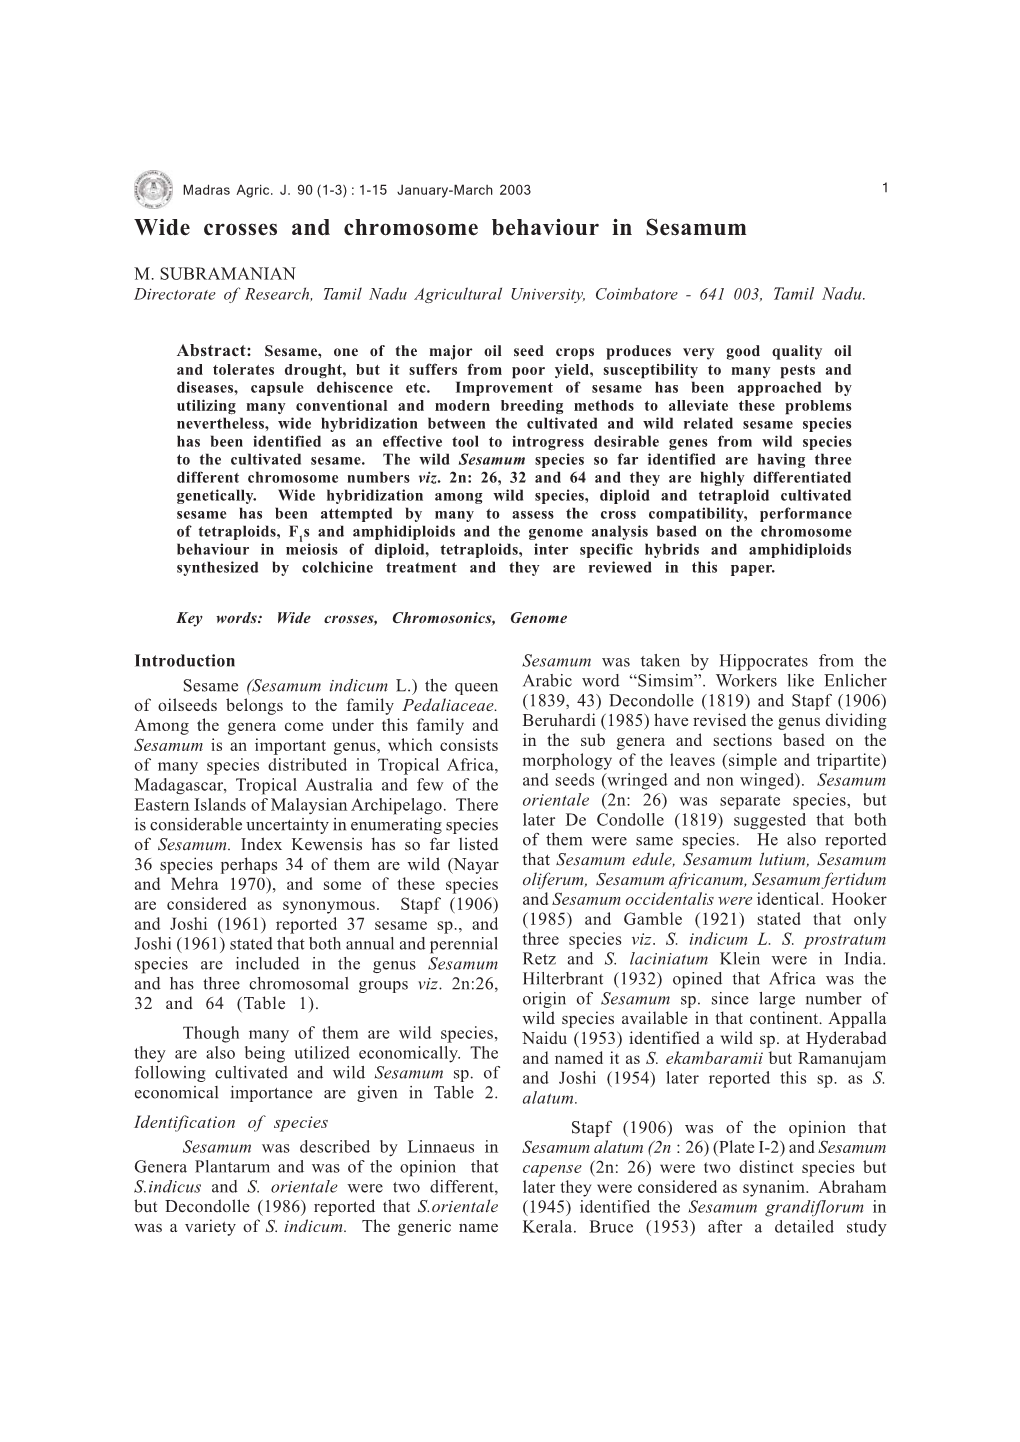 Wide Crosses and Chromosome Behaviour in Sesamum